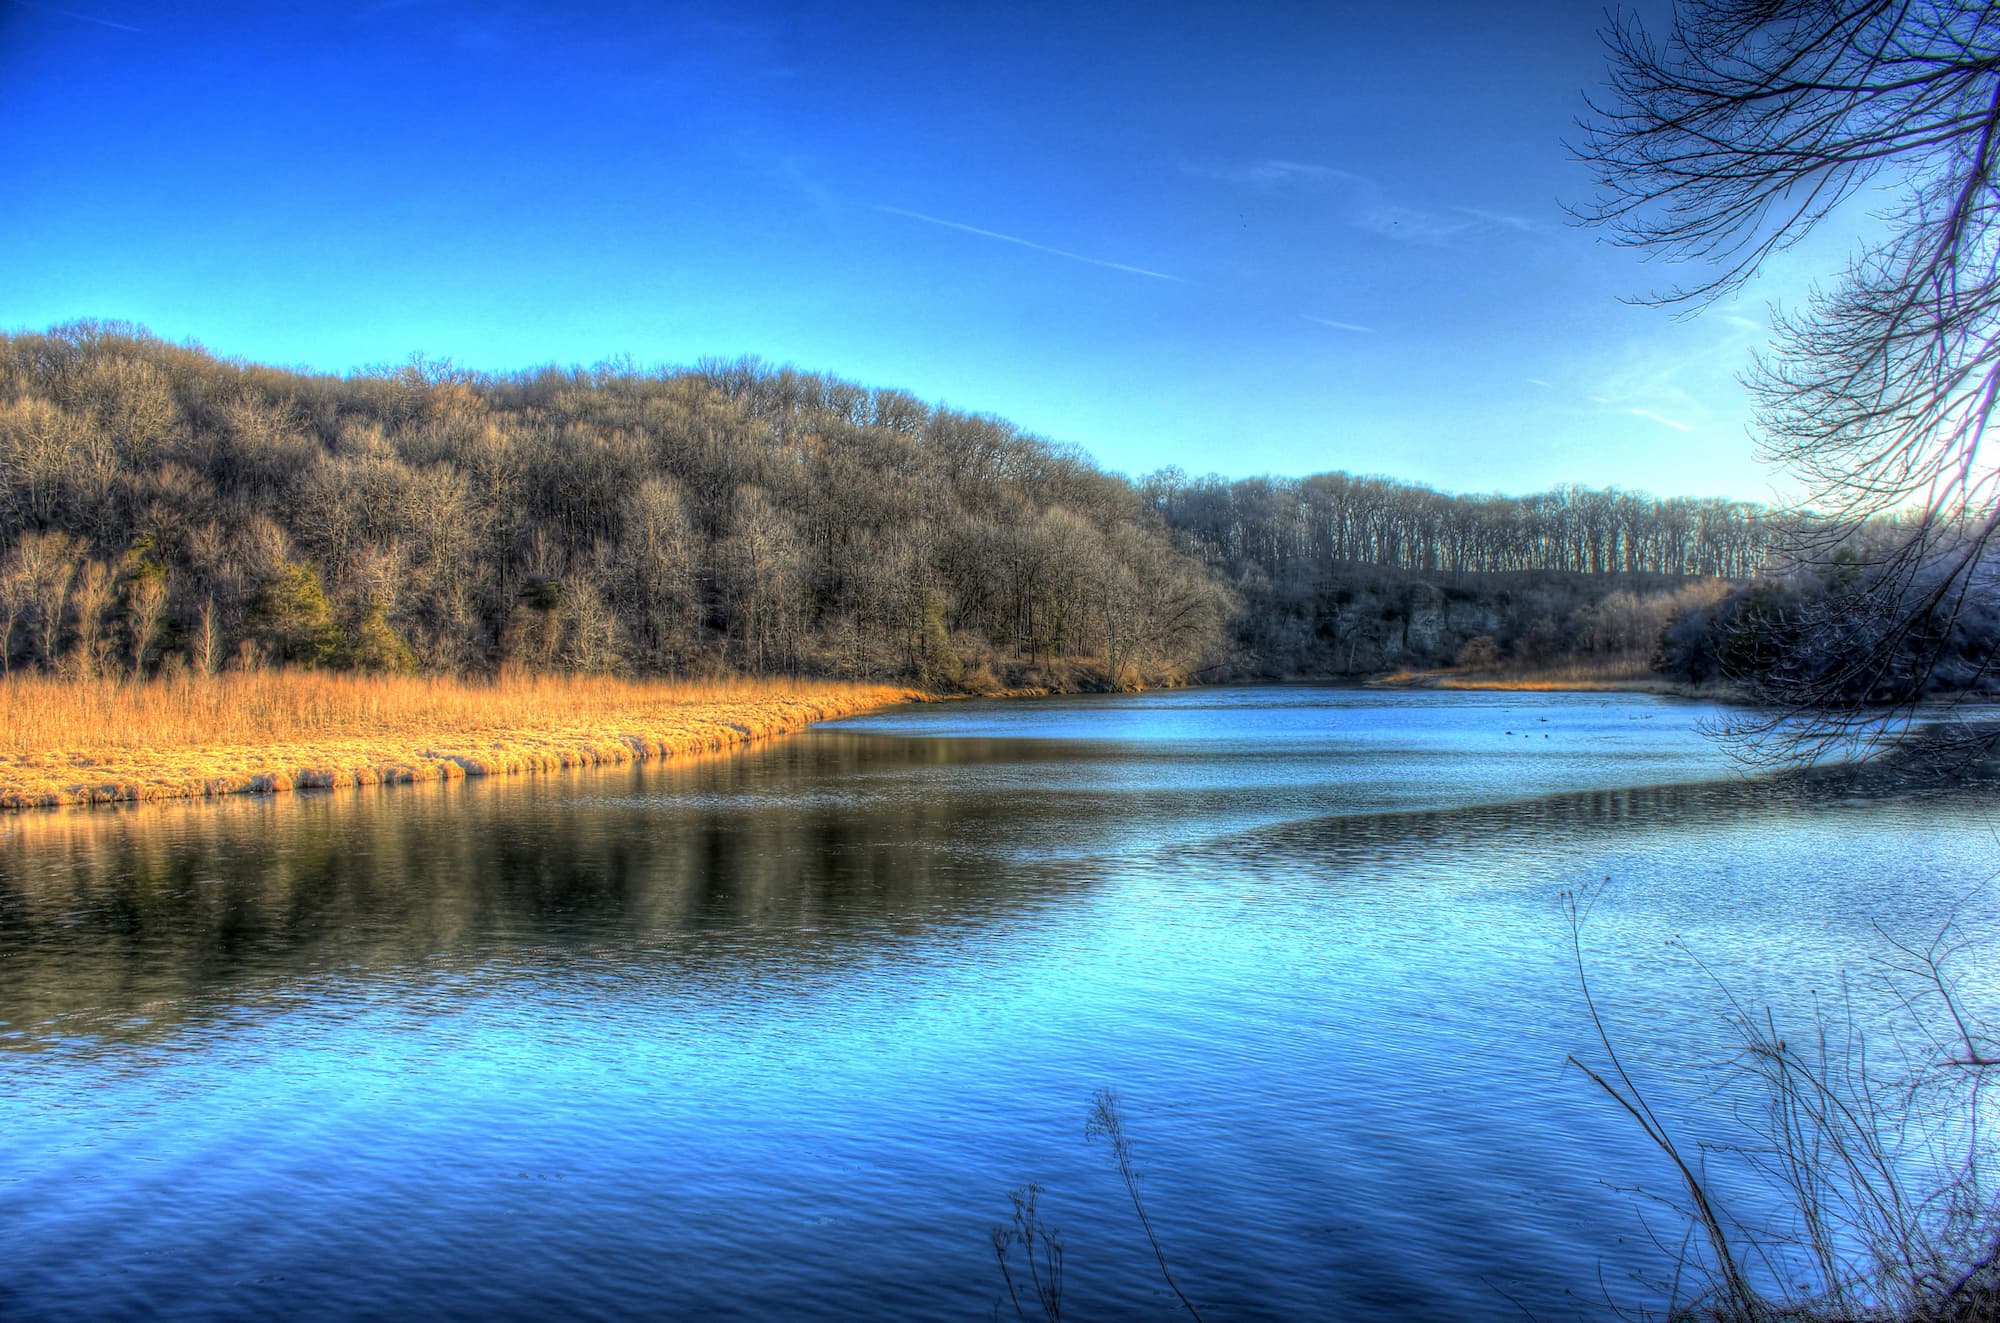 Iowa Backbone State Park Scenic River Landscape 1 